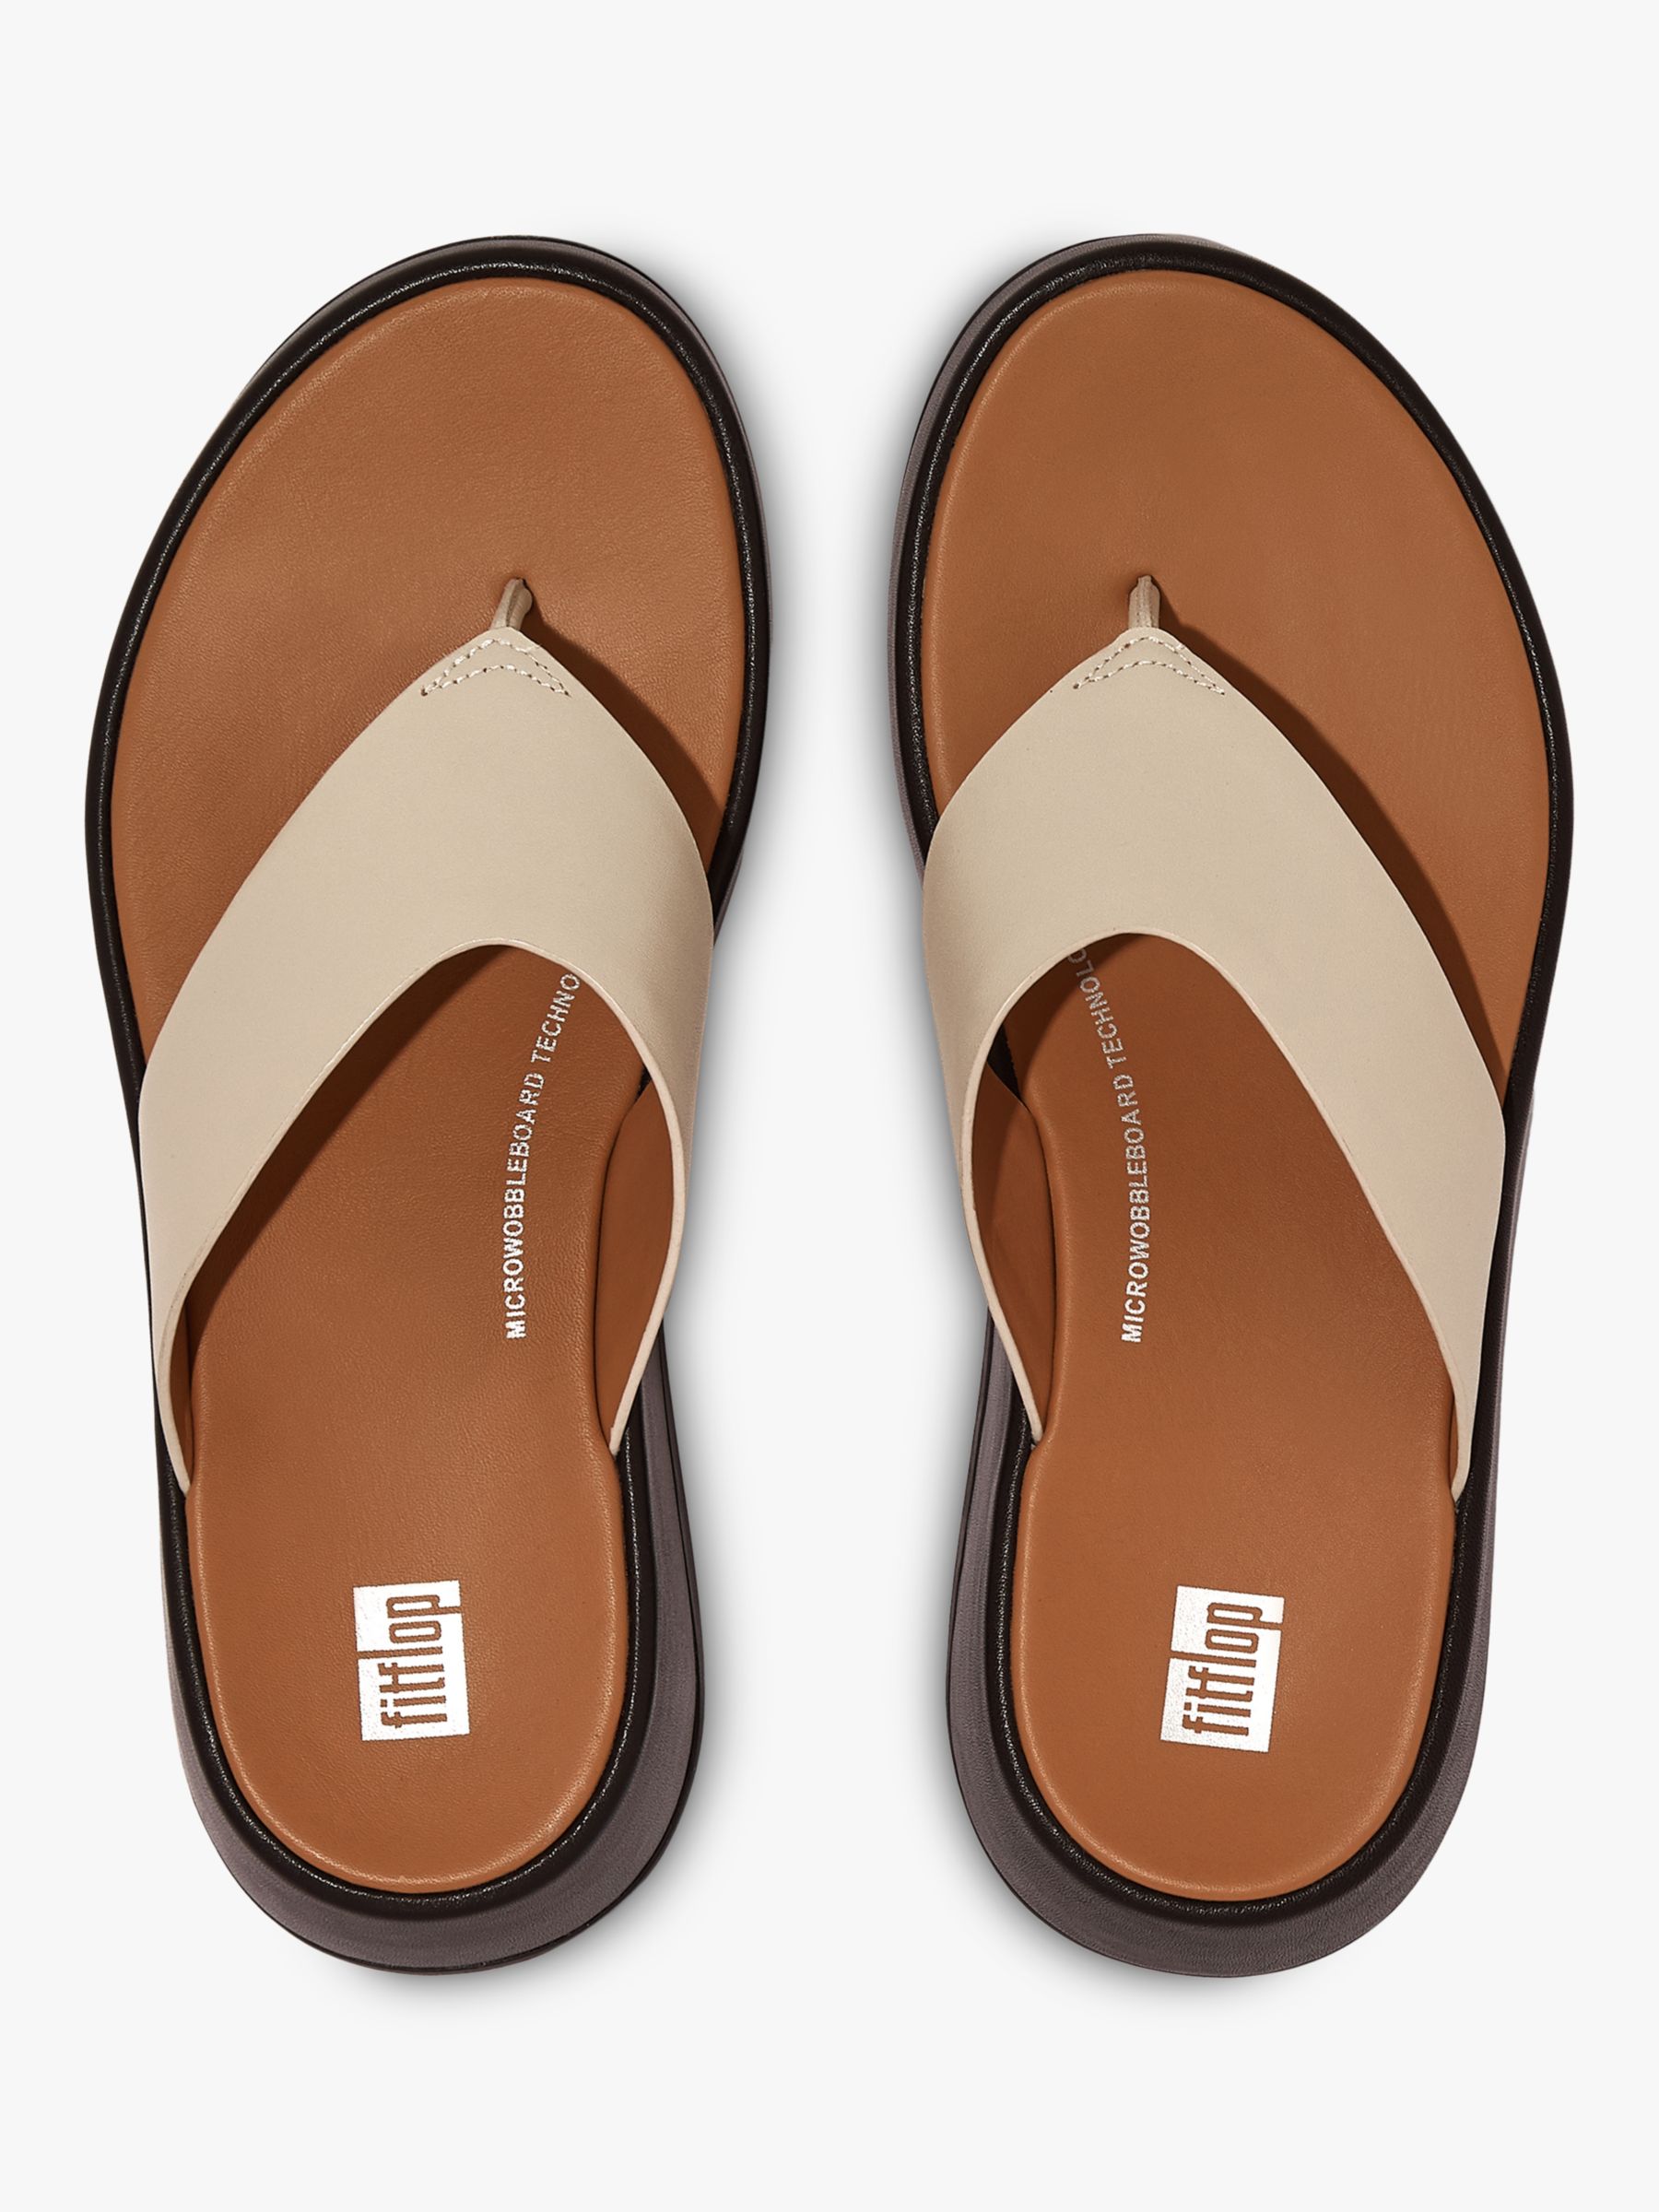 FitFlop F-Mode Flatform Flop Sandals, Stone Beige/Black at John Lewis & Partners